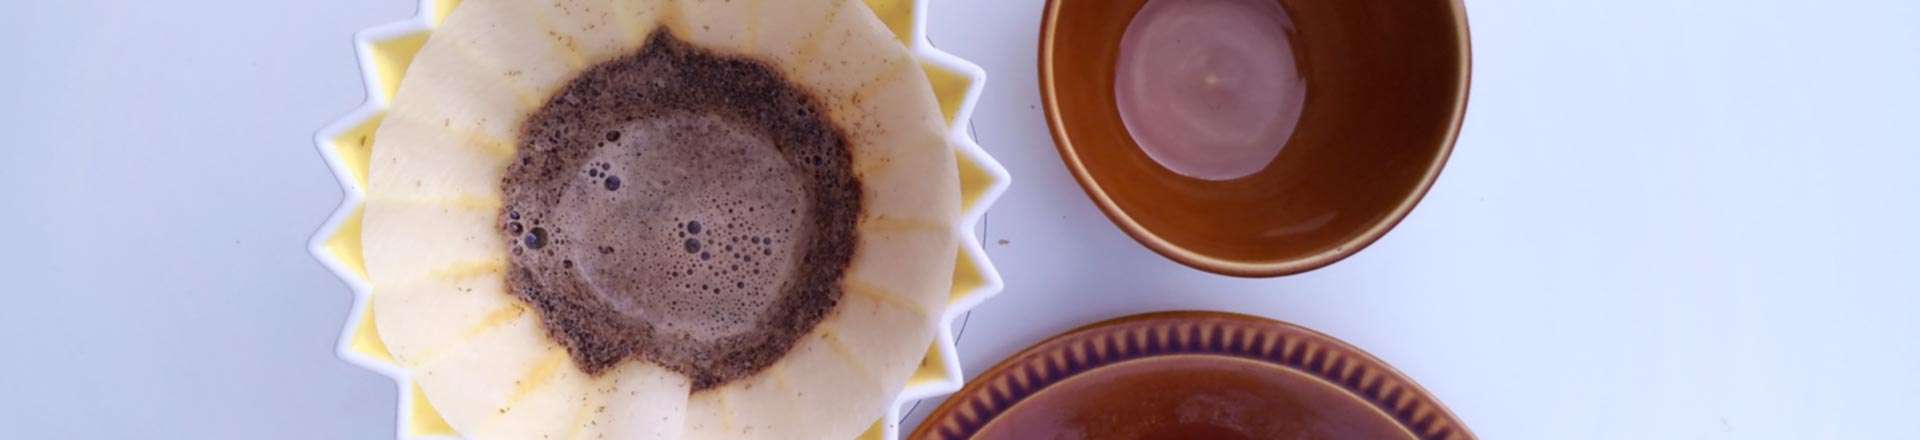 comment faire un bon café guide de préparation recette de café Yellow Peak torrefacteur cafe pau